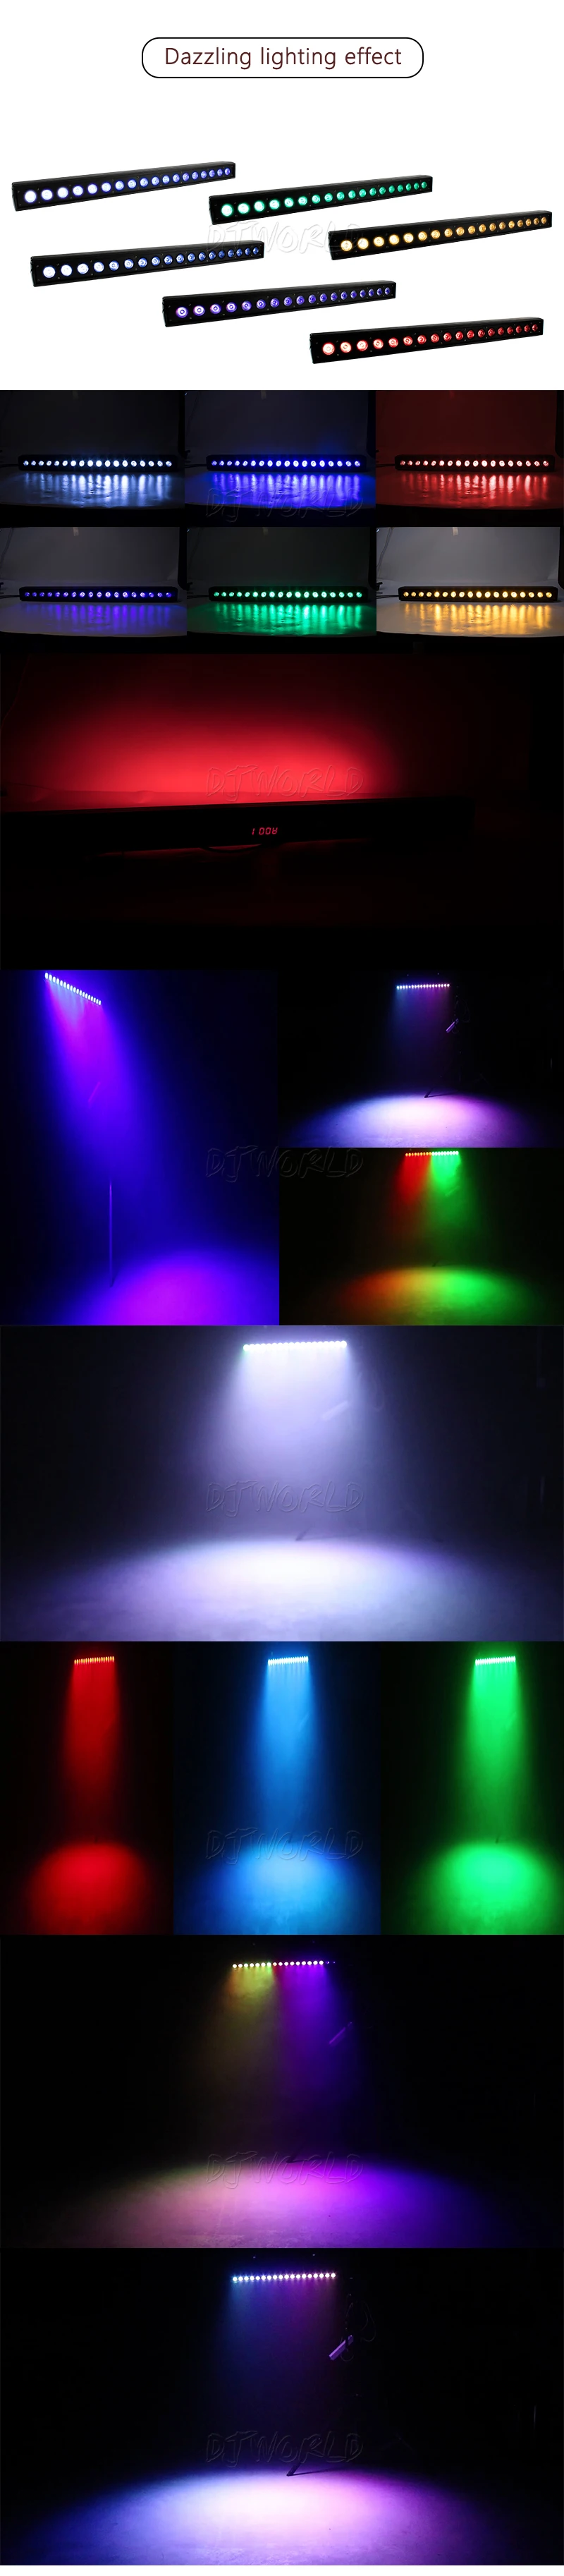 Djworld светодиодный настенный светильник 18x18 Вт RGBWA + UV 6в1 освещение сценический эффект освещение для Dj Дискотека День рождения Свадьба бар